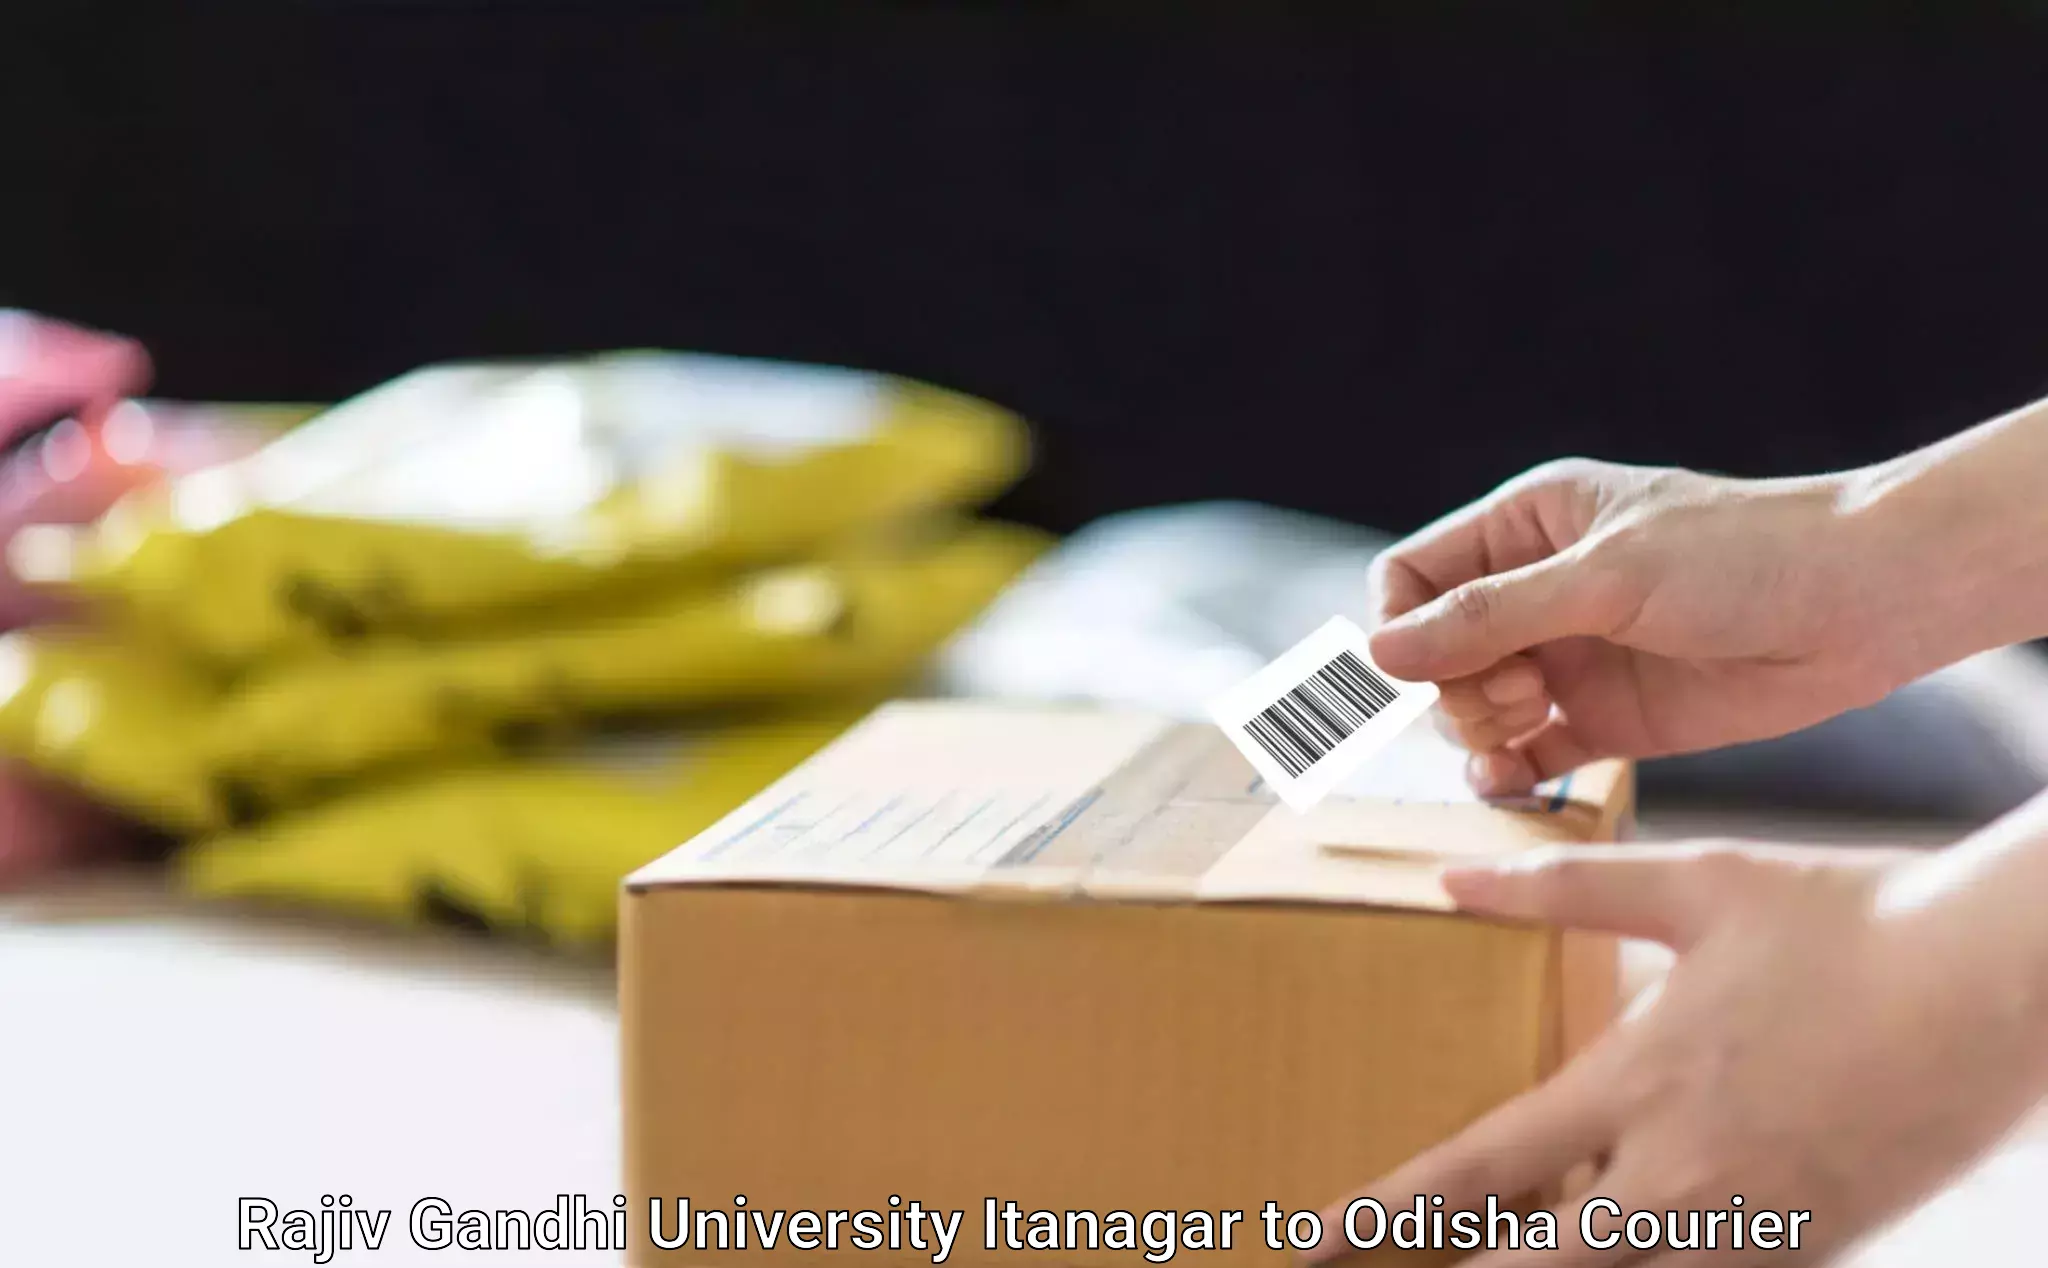 Seamless shipping experience Rajiv Gandhi University Itanagar to Gajapati